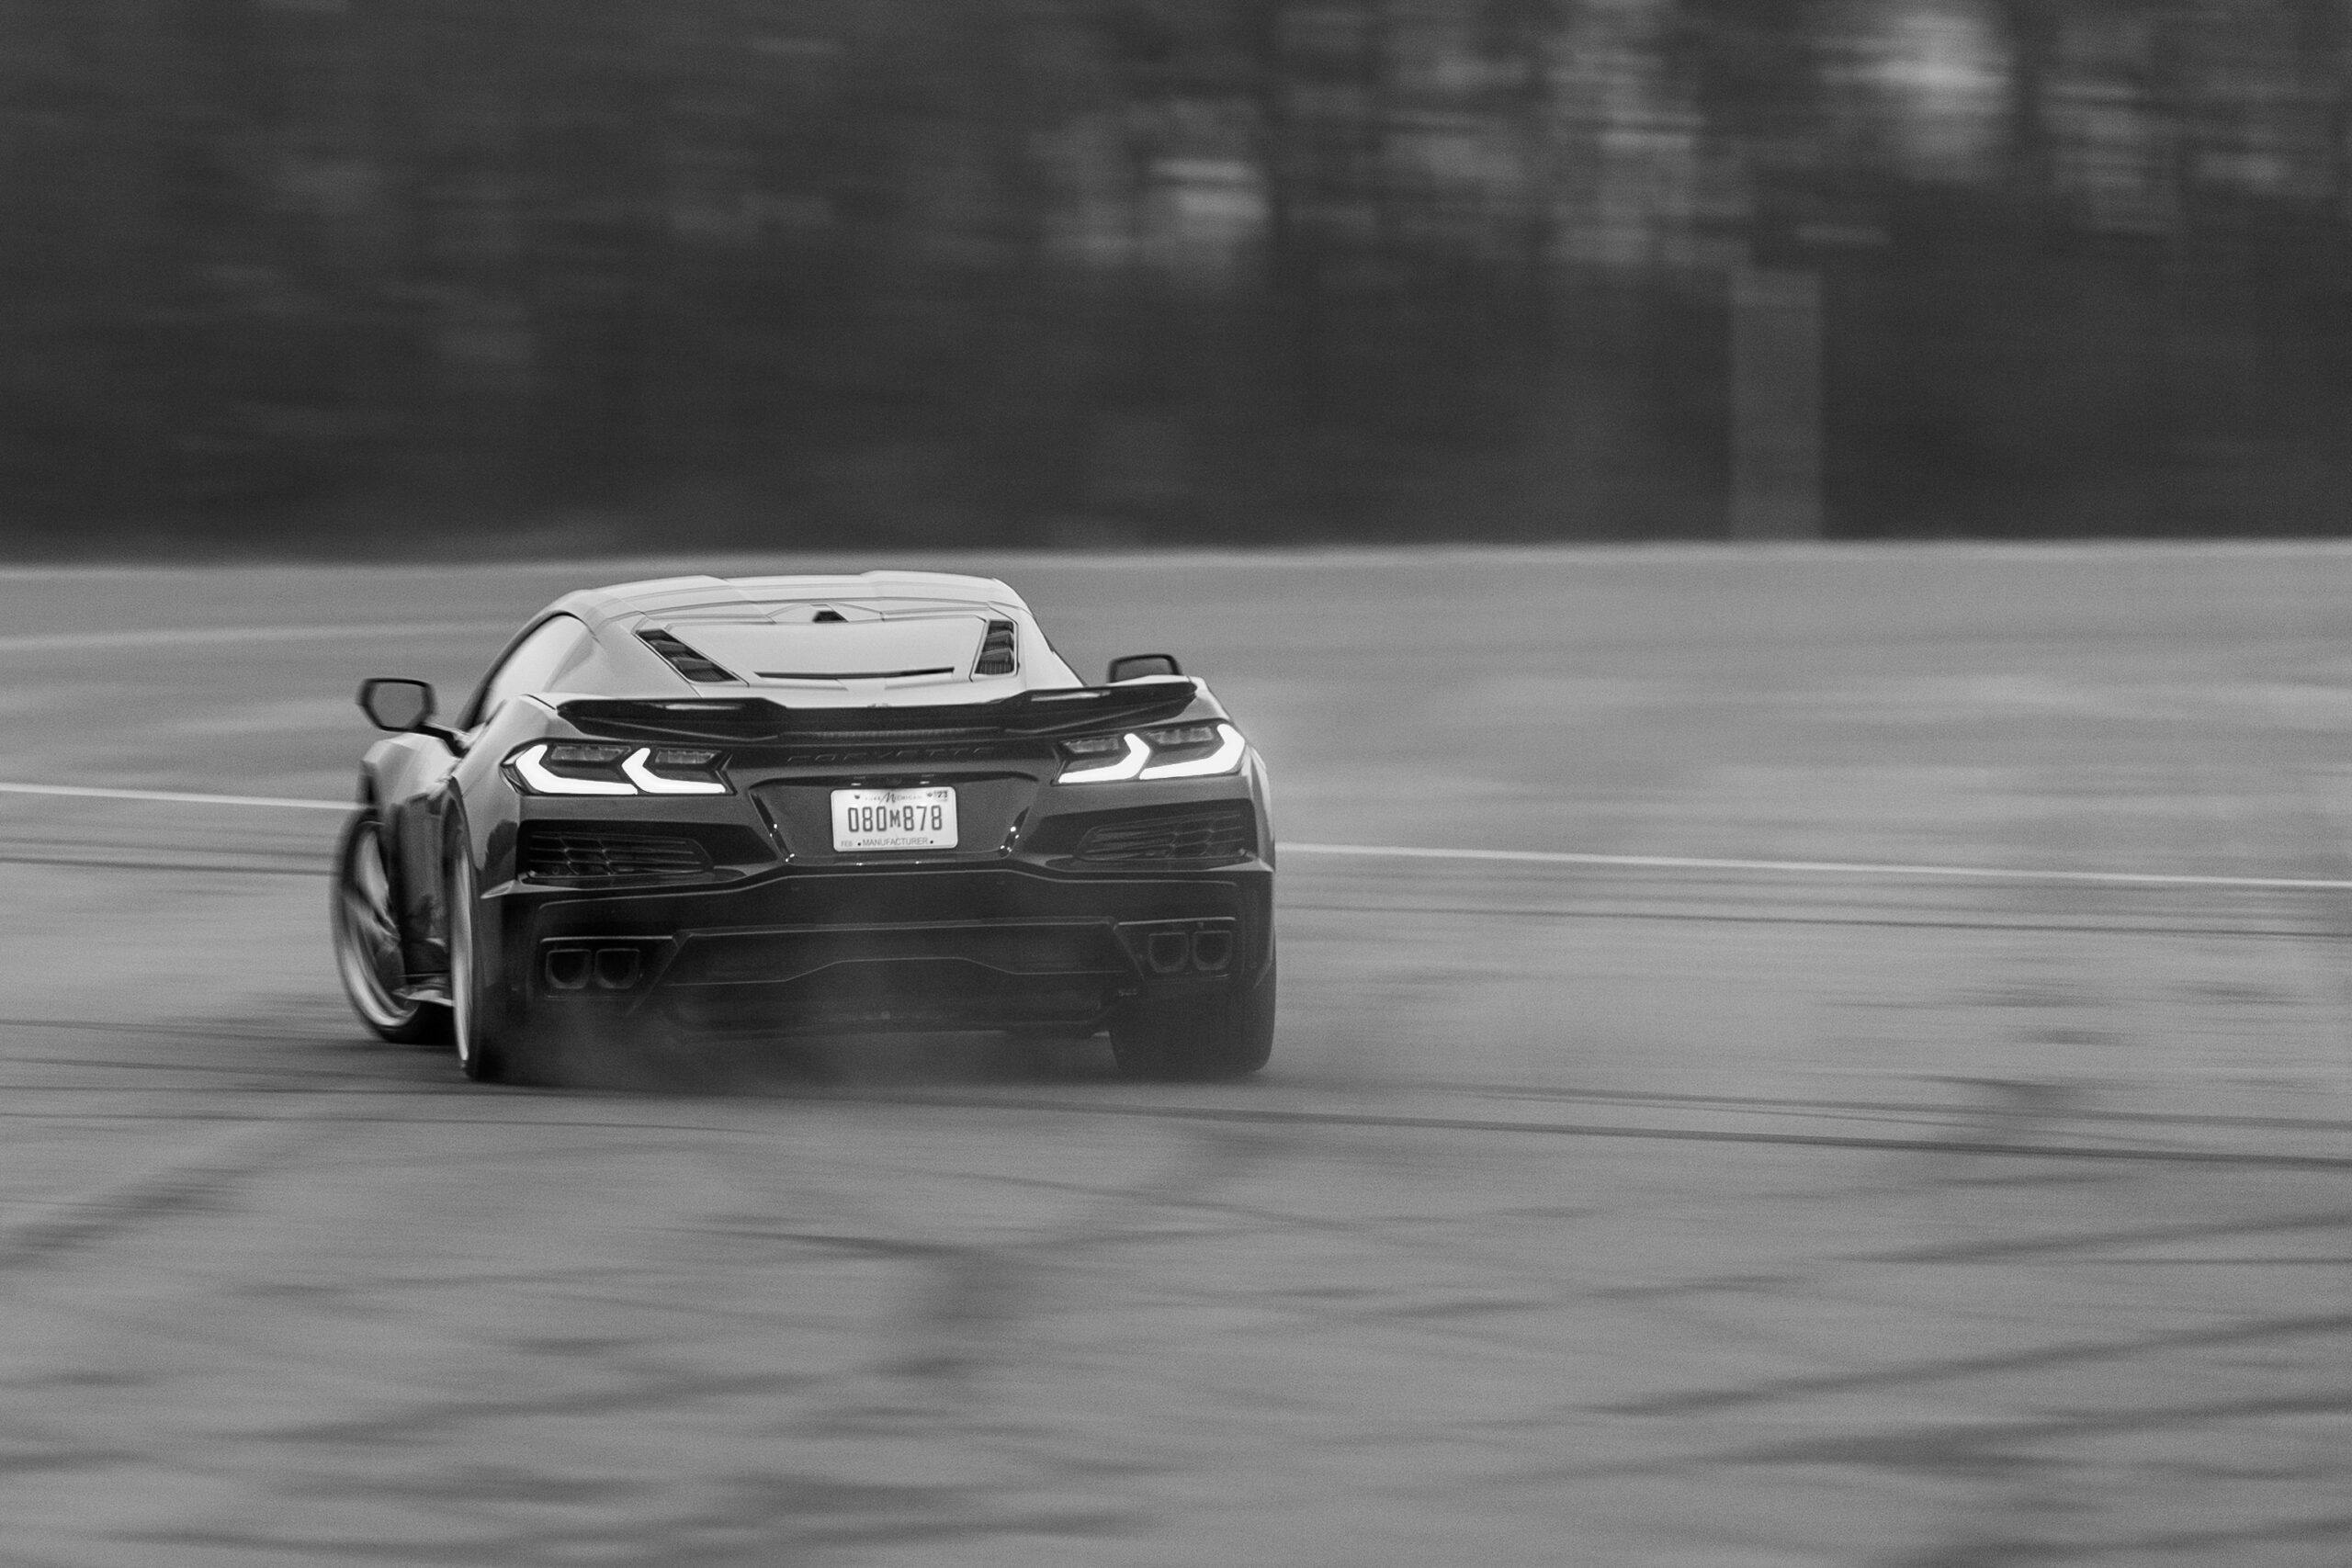 New Corvette E-Ray hybrid driving action rear black white